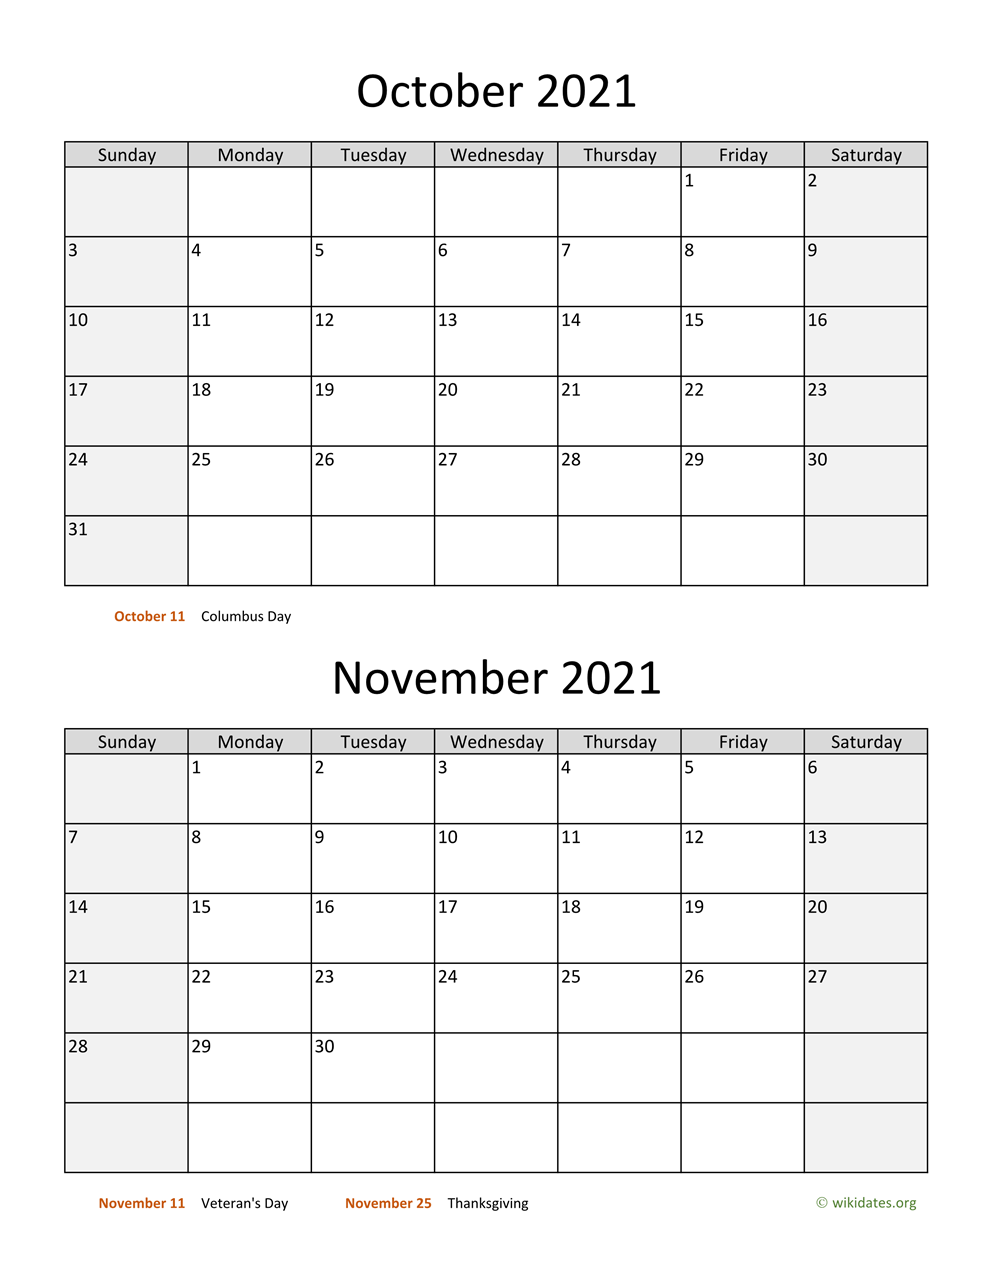 October And November 2021 Calendar WikiDates